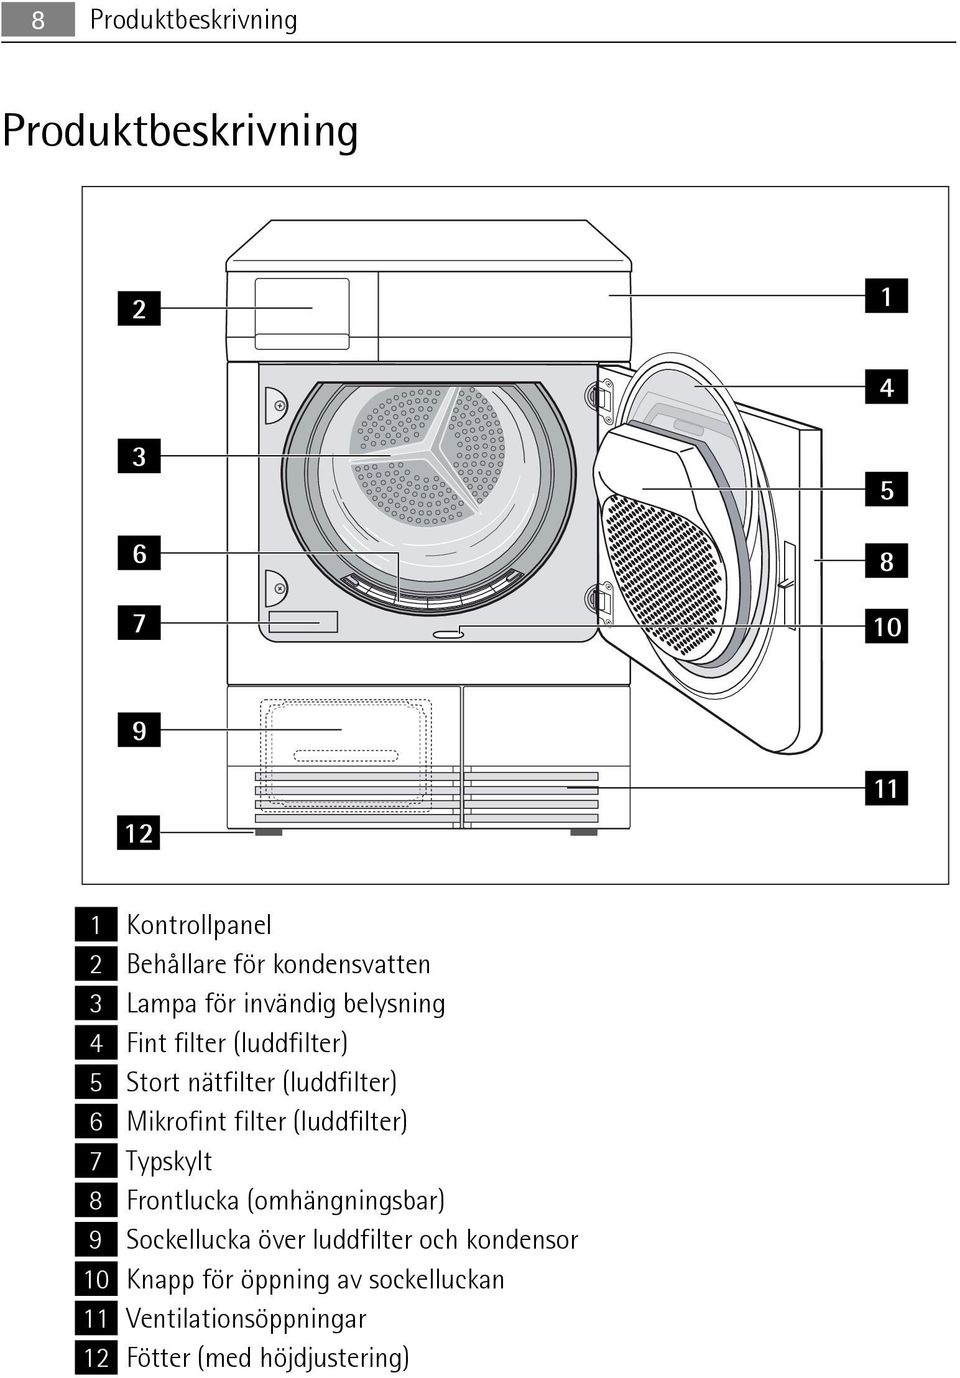 6 Mikrofint filter (luddfilter) 7 Typskylt 8 Frontlucka (omhängningsbar) 9 Sockellucka över luddfilter